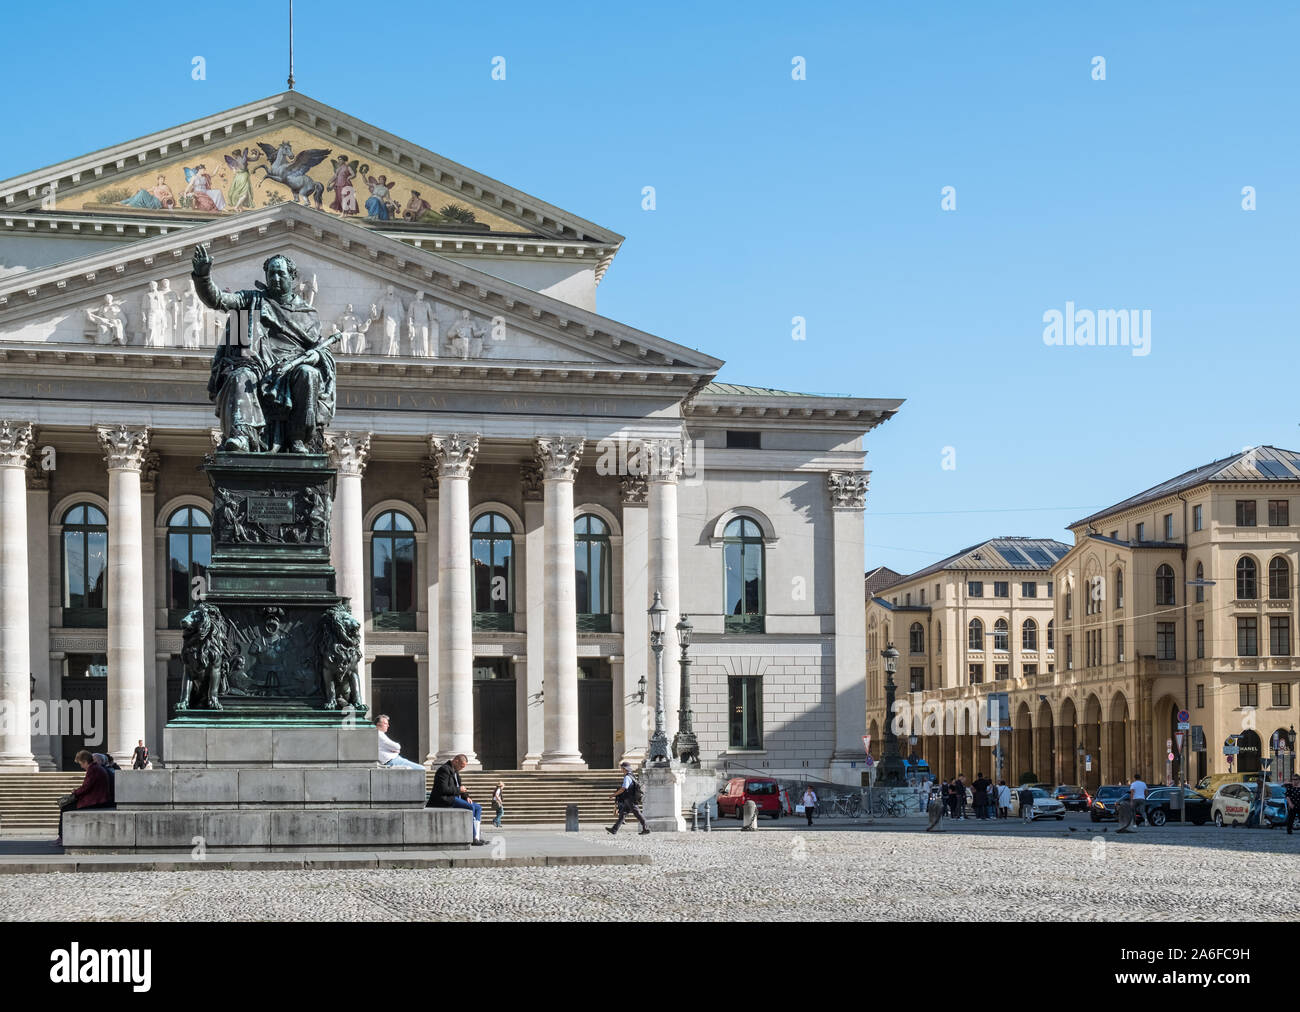 Monumento al re Massimiliano I Giuseppe von Bayern, trova in Max Joseph Platz, di fronte al Teatro Nazionale edificio, Altstadt, Monaco di Baviera, Germania Foto Stock